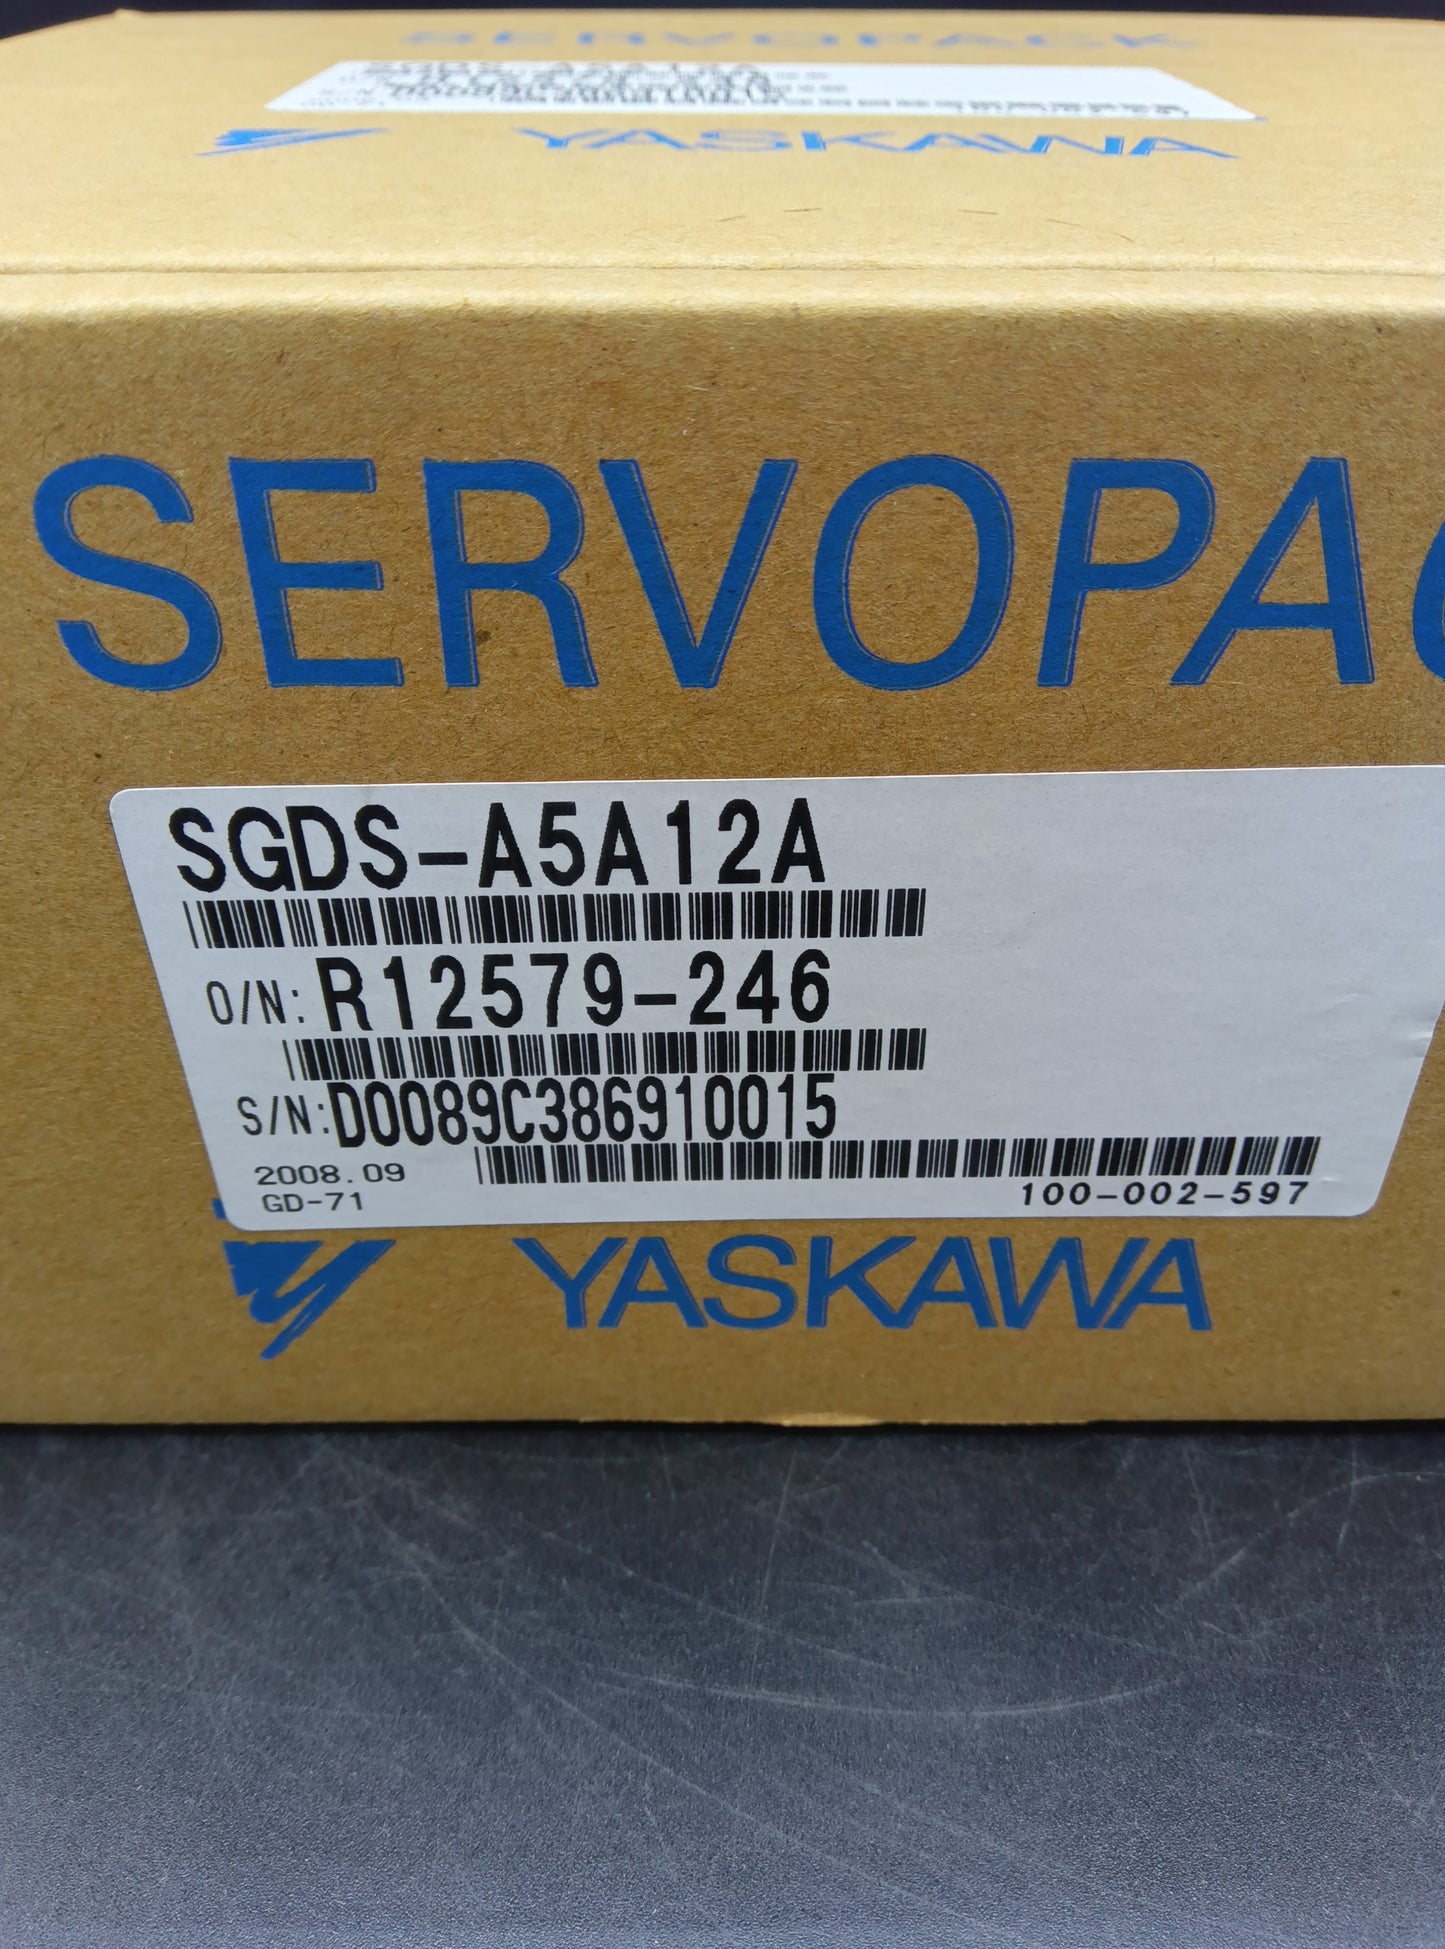 安川電機 SGDS-A5A12A サーボパック YASKAWA | 八雲機械工具